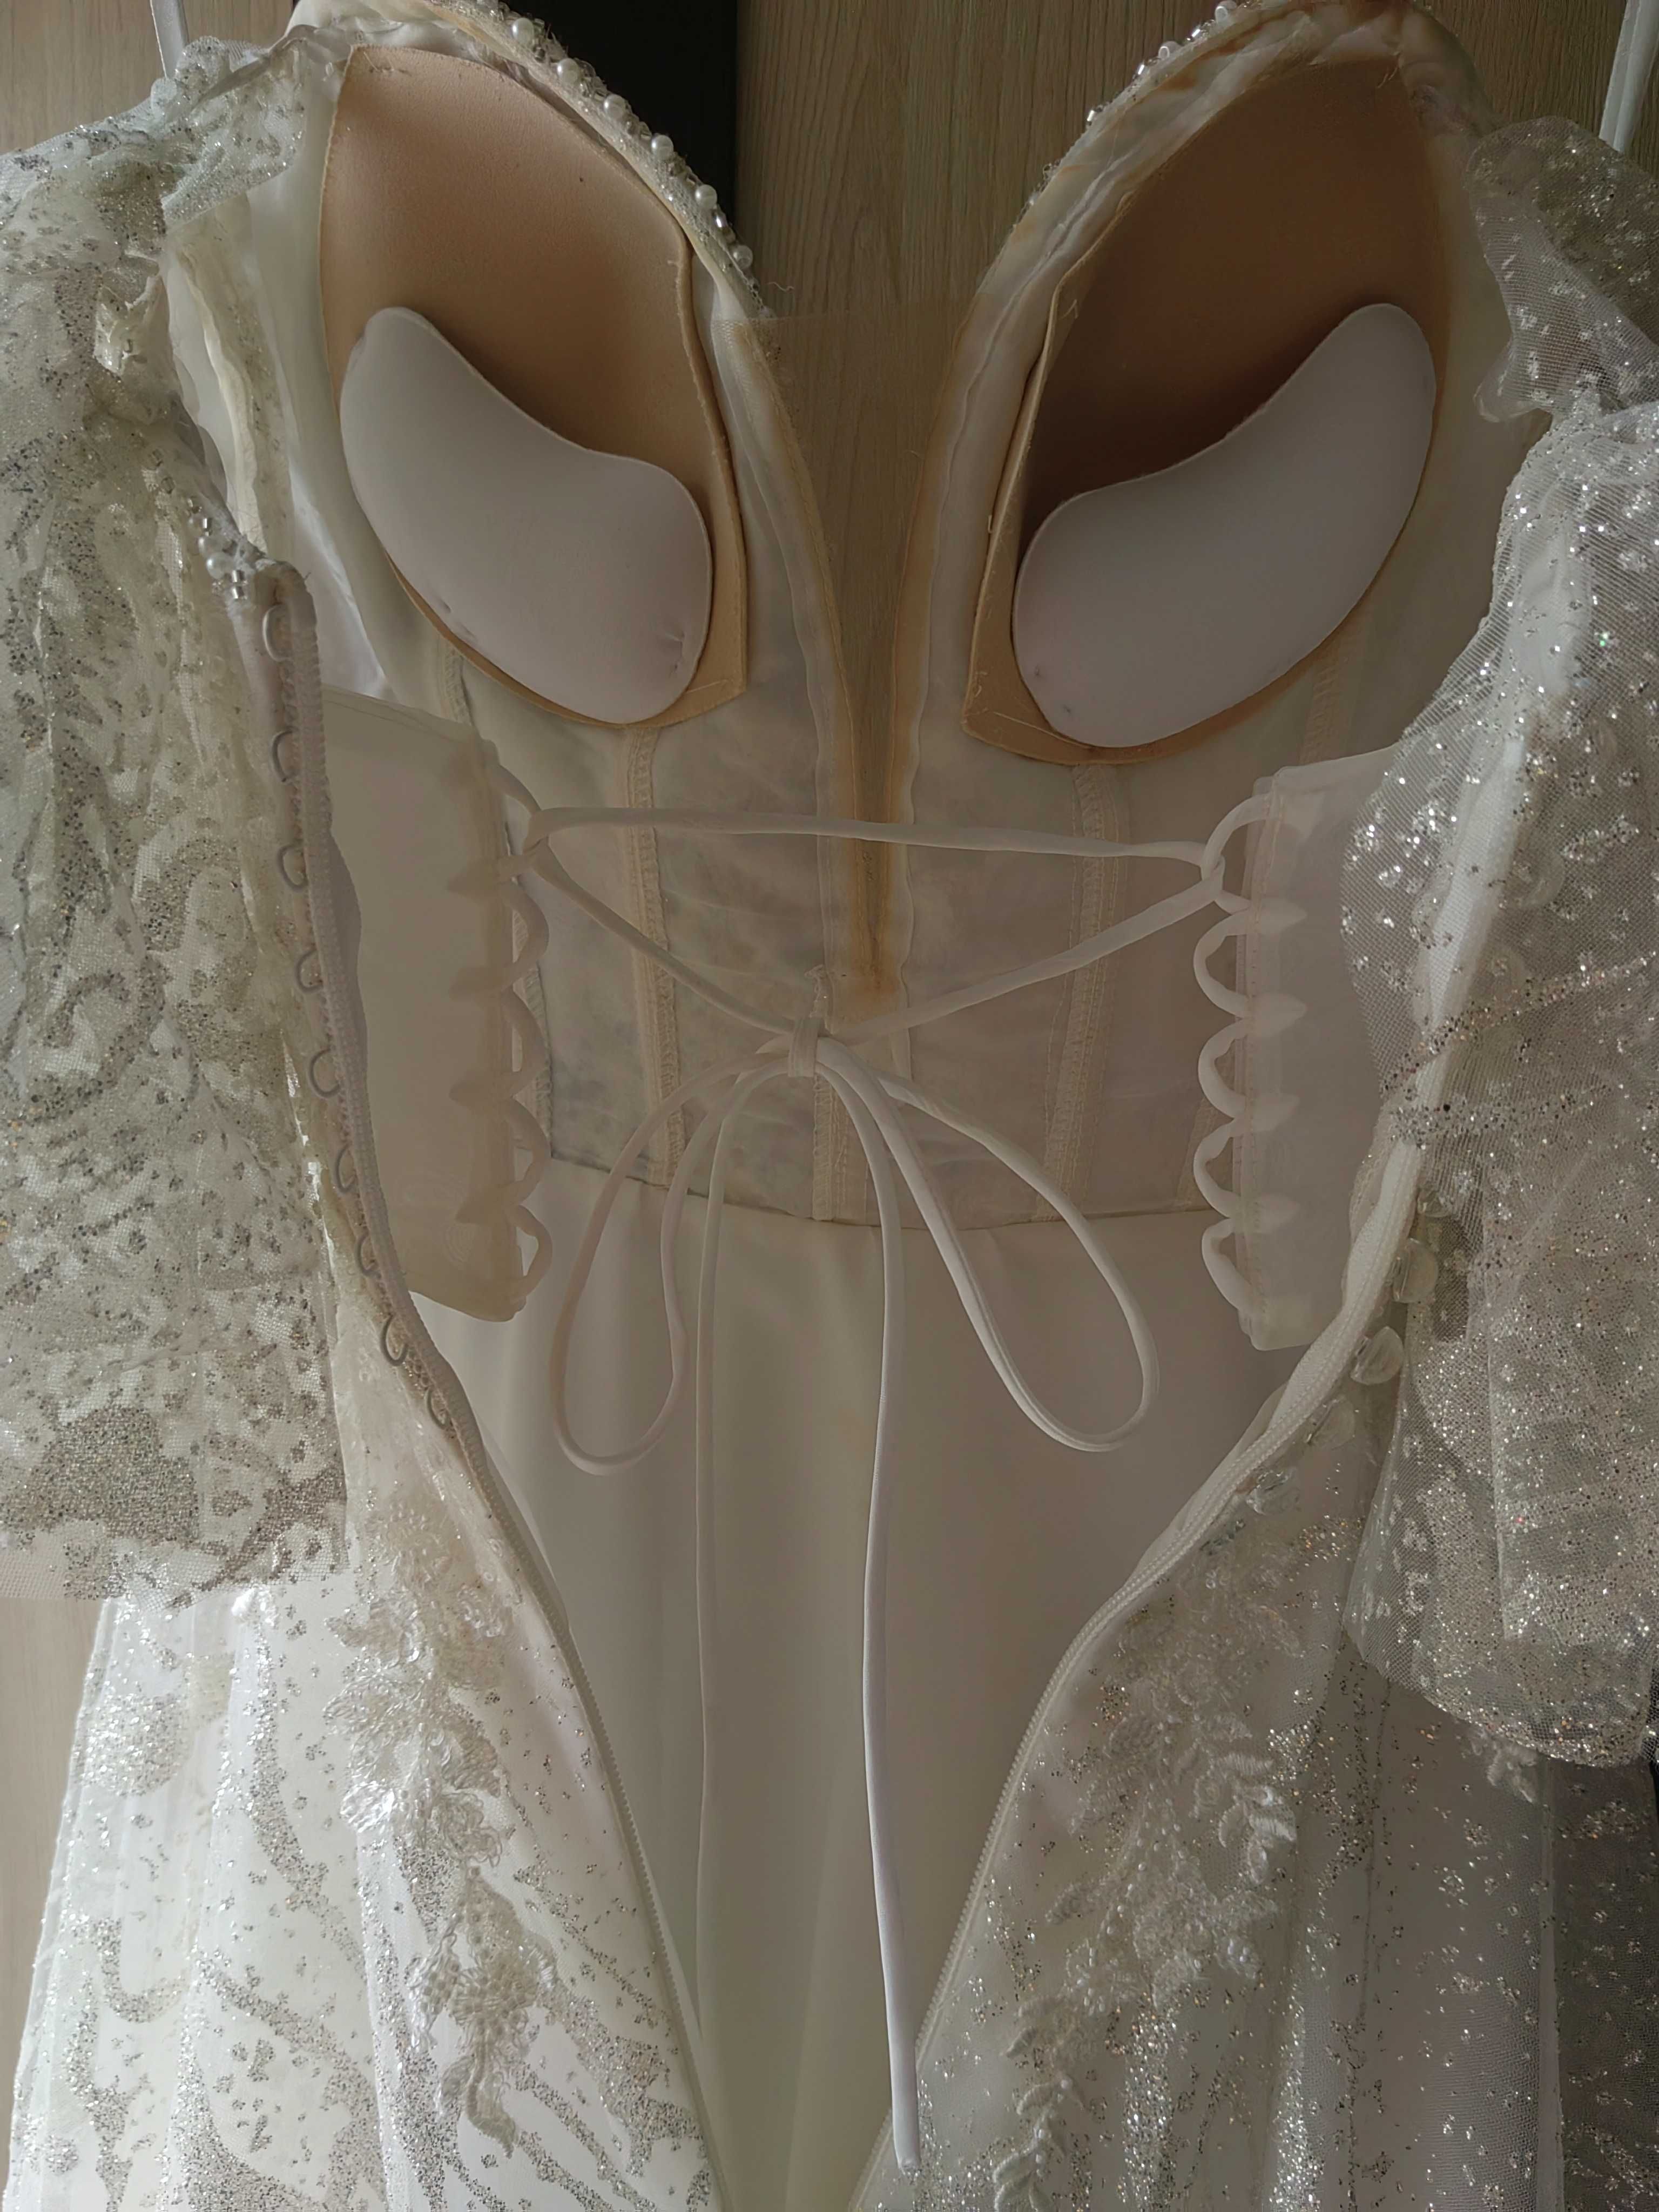 Błyszcząca suknia ślubna